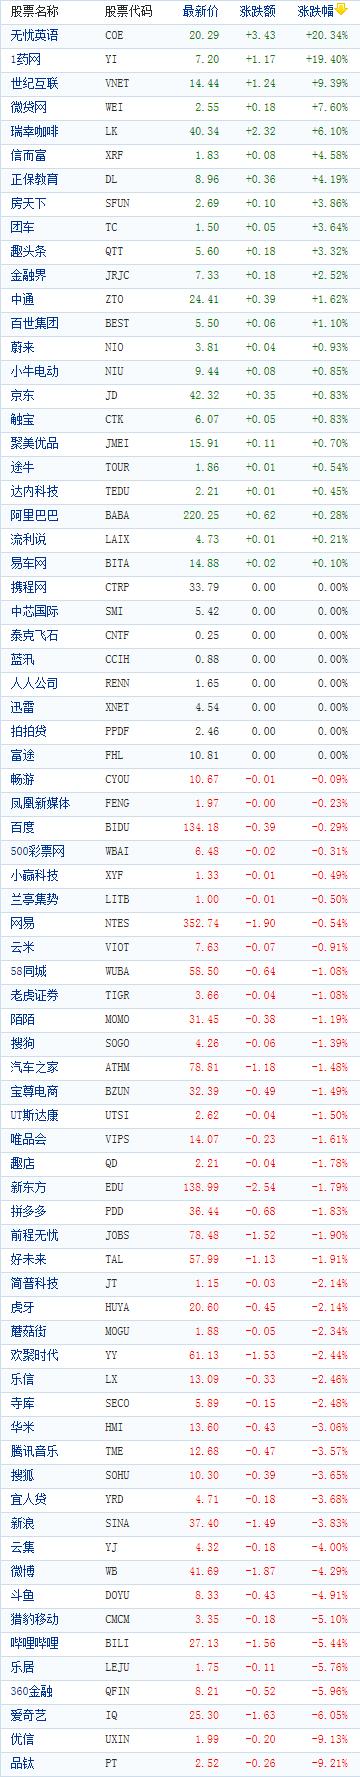 中国概念股周二收盘涨跌互现 51Tlak大涨逾20%